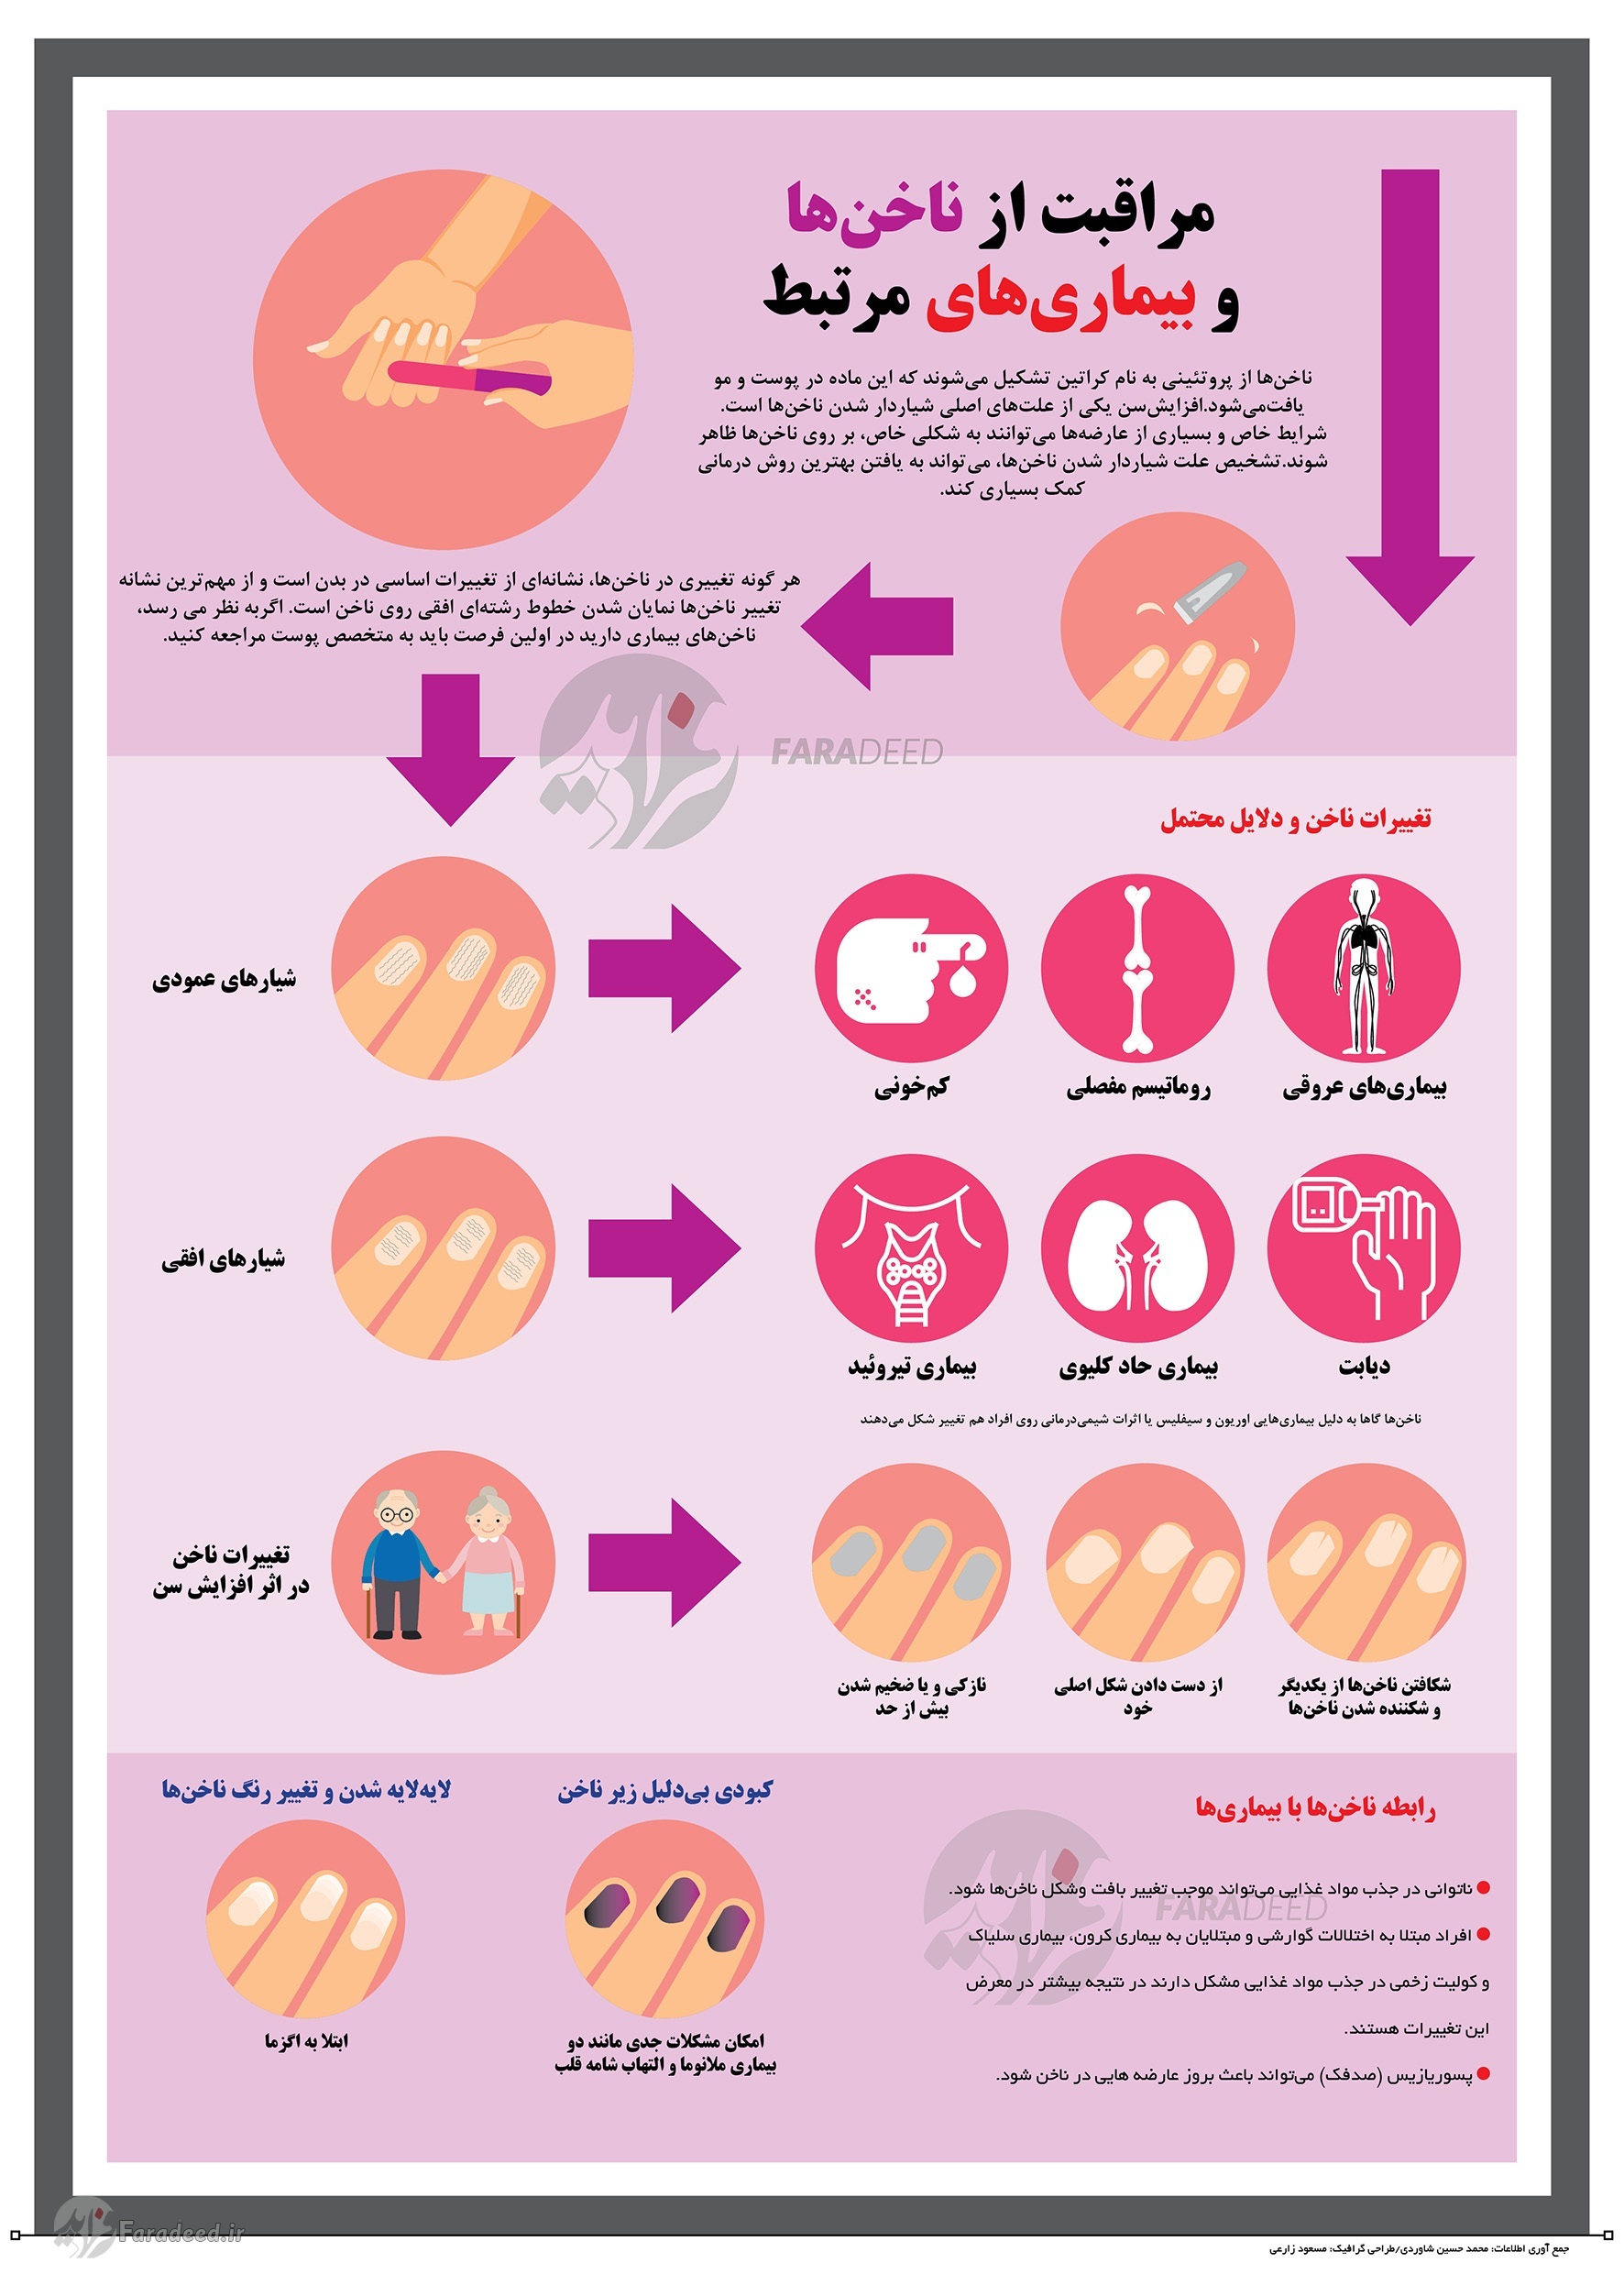 اینفوگرافی/ تشخیص بیماری از روی ناخن